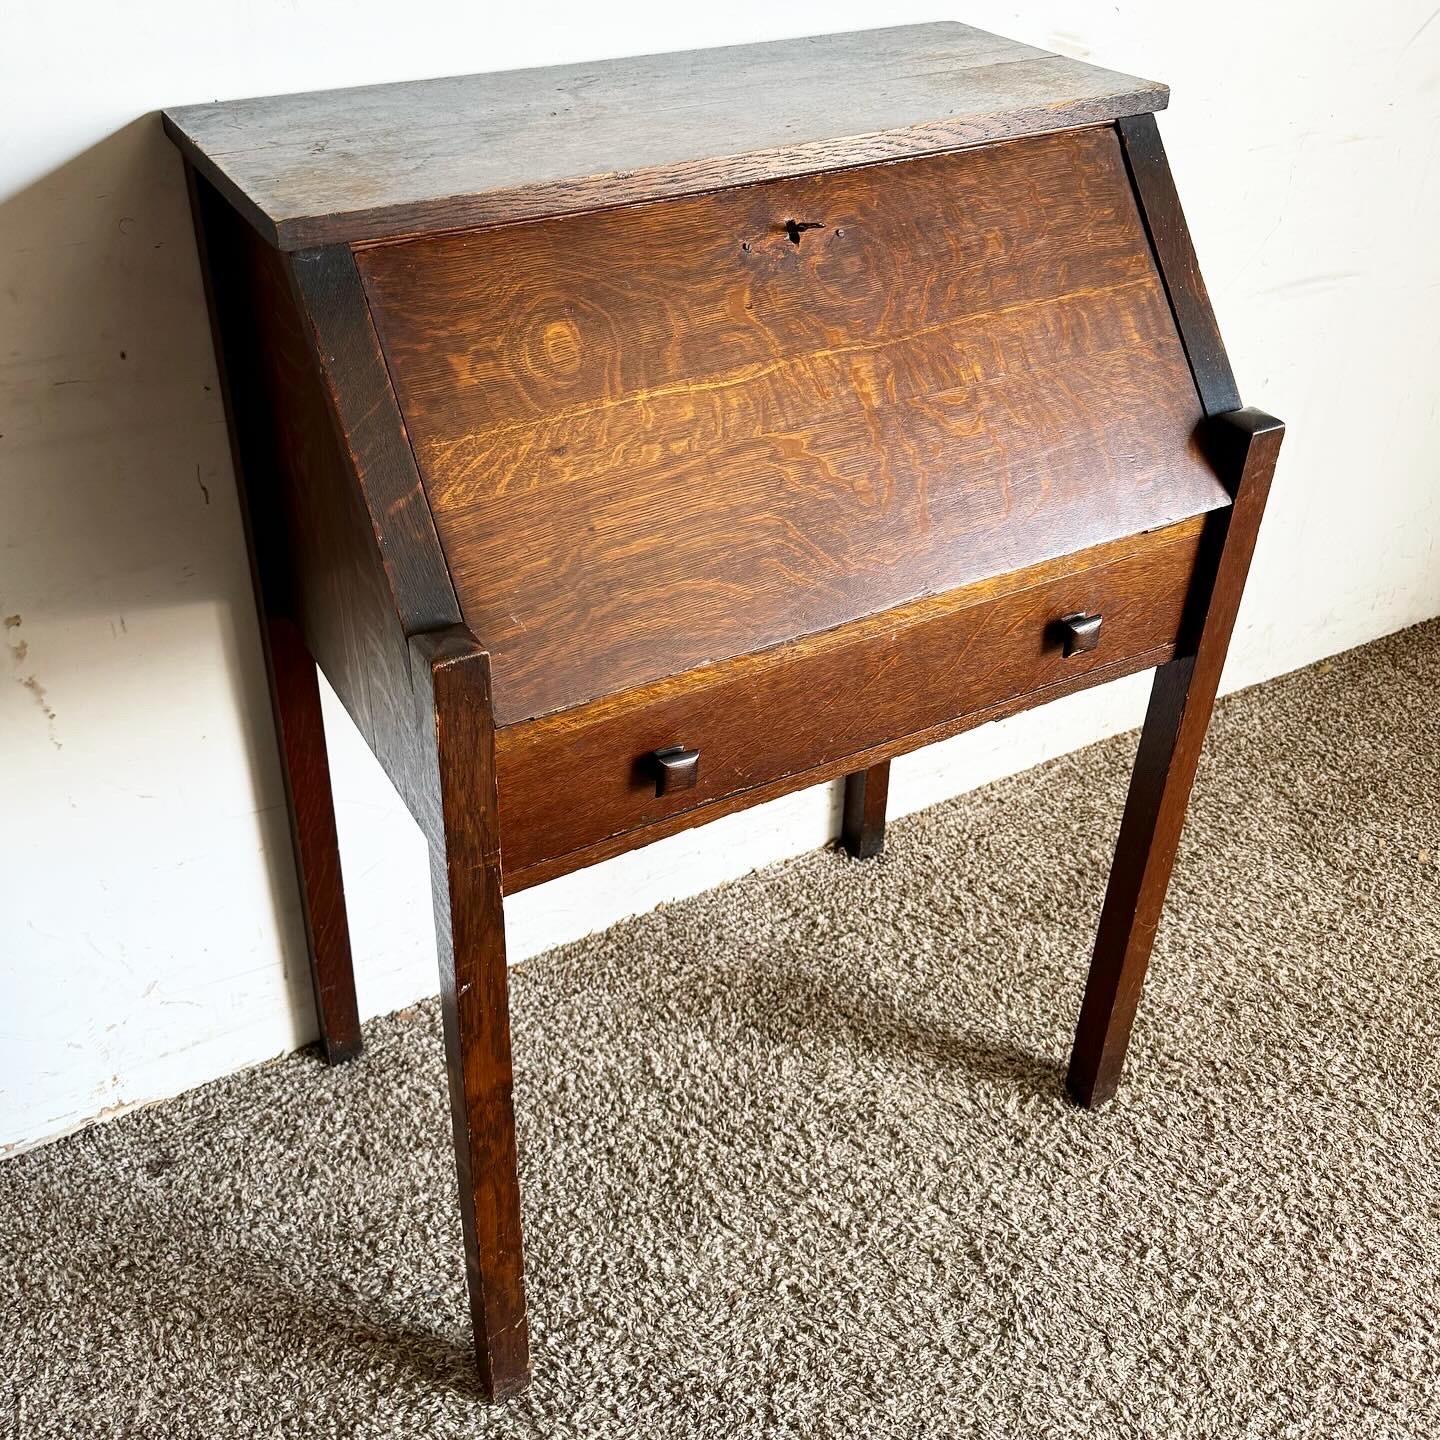 Entdecken Sie die zeitlose Eleganz des Antique Tiger Oak Secretary Desk von Danner, der sich durch exquisite Handwerkskunst, Funktionalität und historischen Charme für Ihr Büro oder Ihren Arbeitsbereich auszeichnet.
Vintage-Stücke können